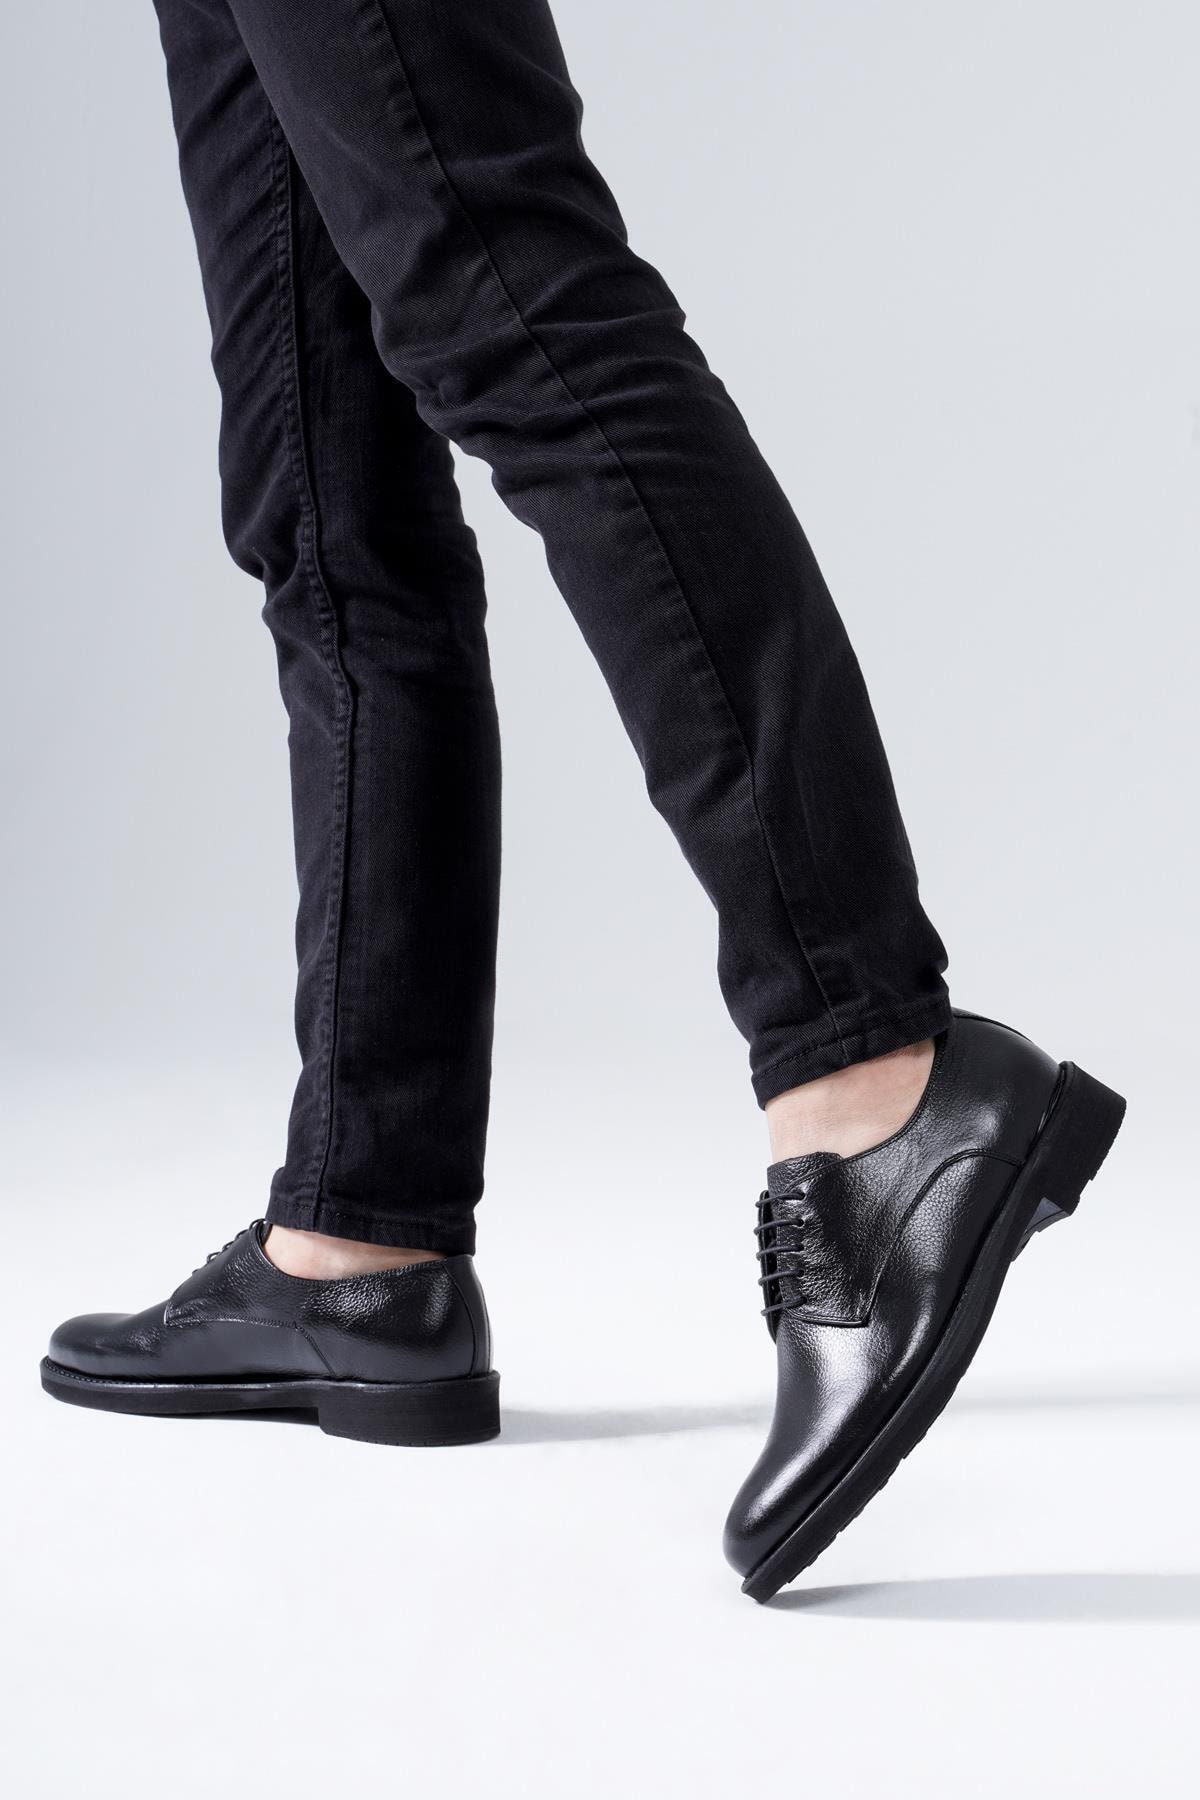 Мужская классическая обувь из натуральной кожи, повседневная модель на шнуровке CZ London, черный женские ботильоны из натуральной кожи на молнии и каблуке с металлическим ремнем cz london черный